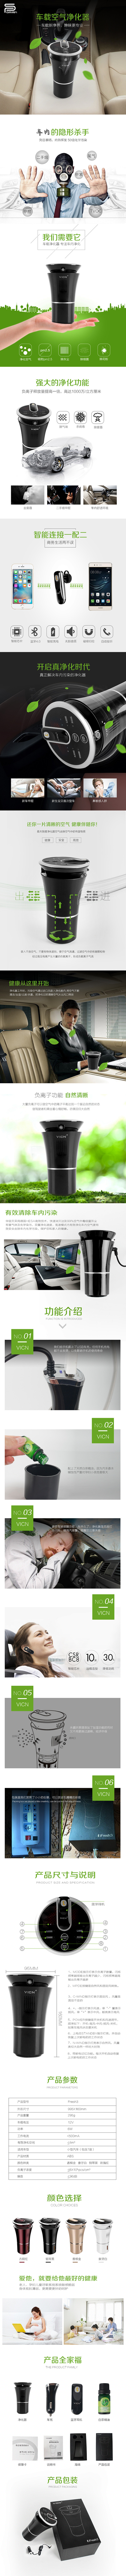 车载空气净化器详情页 - 视觉中国设计师...